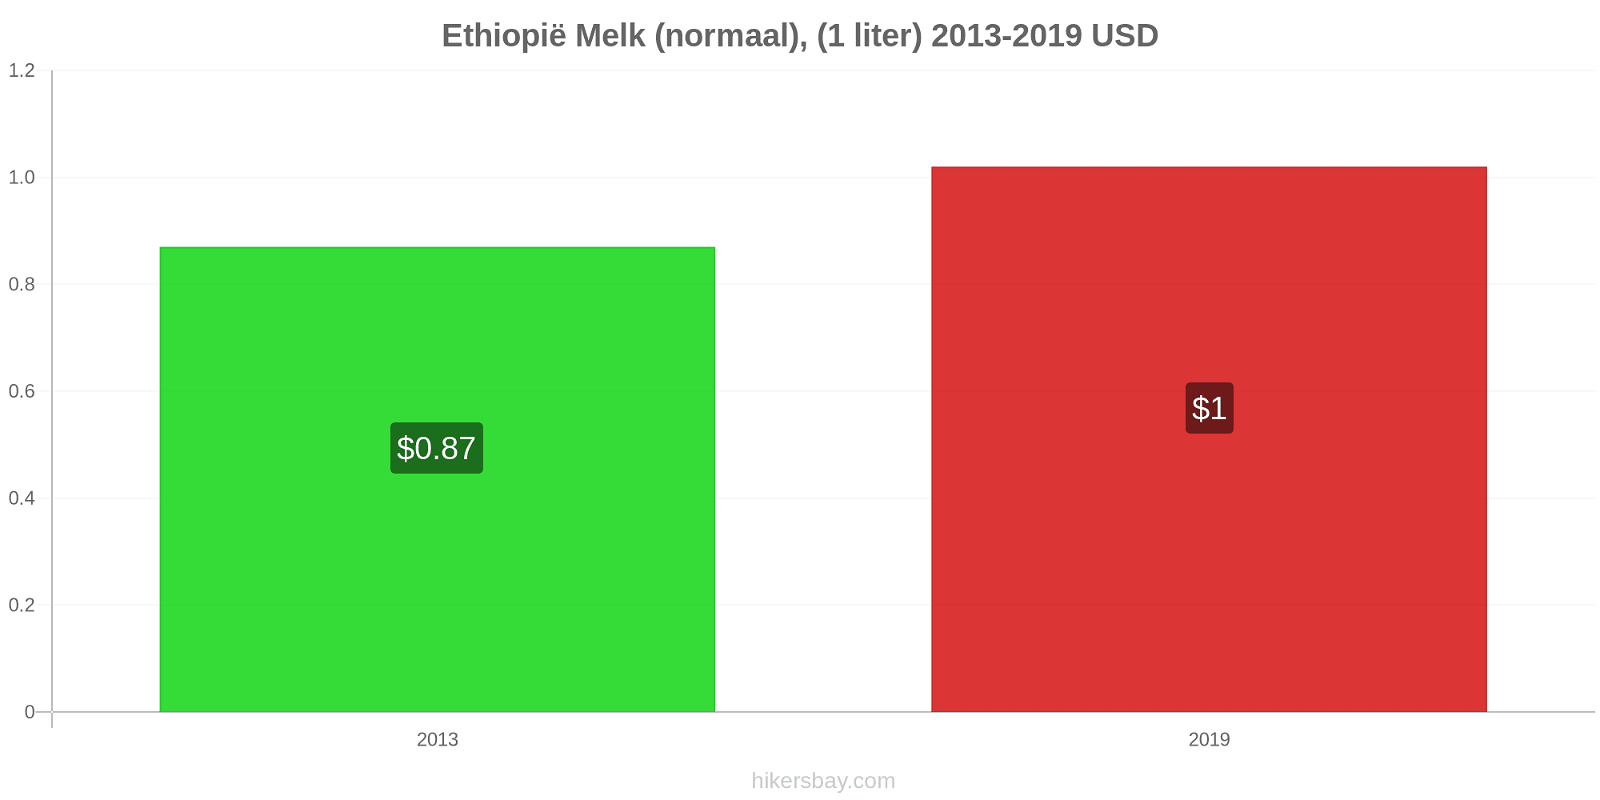 Ethiopië prijswijzigingen Melk (regelmatige), (1 liter) hikersbay.com